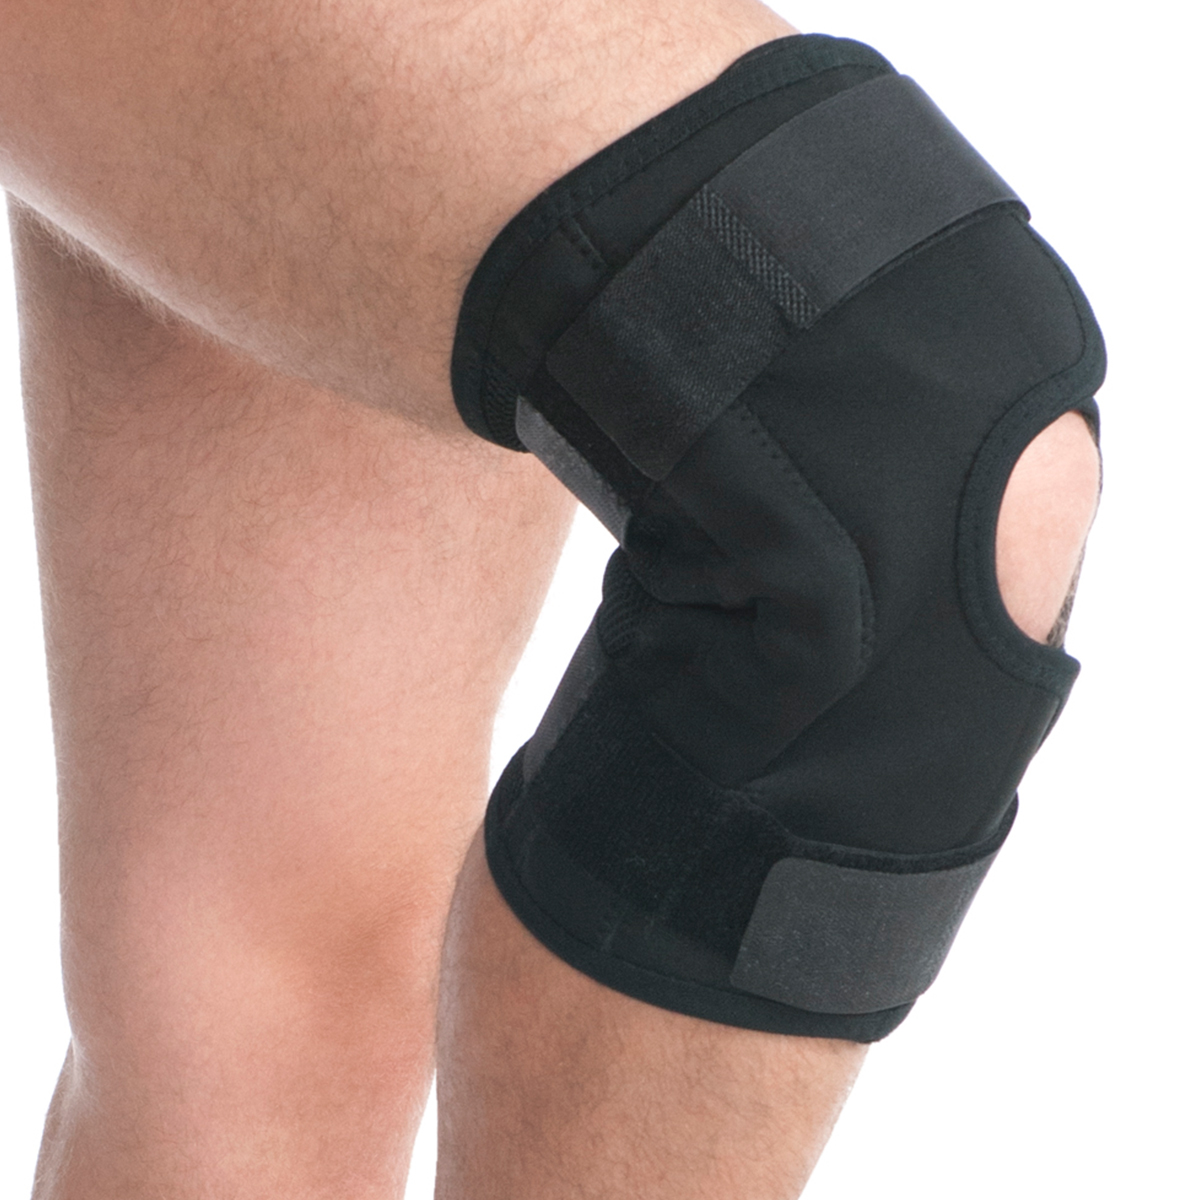 Pooperační ortéza kolenního kloubu černá, Medtextile, 6303